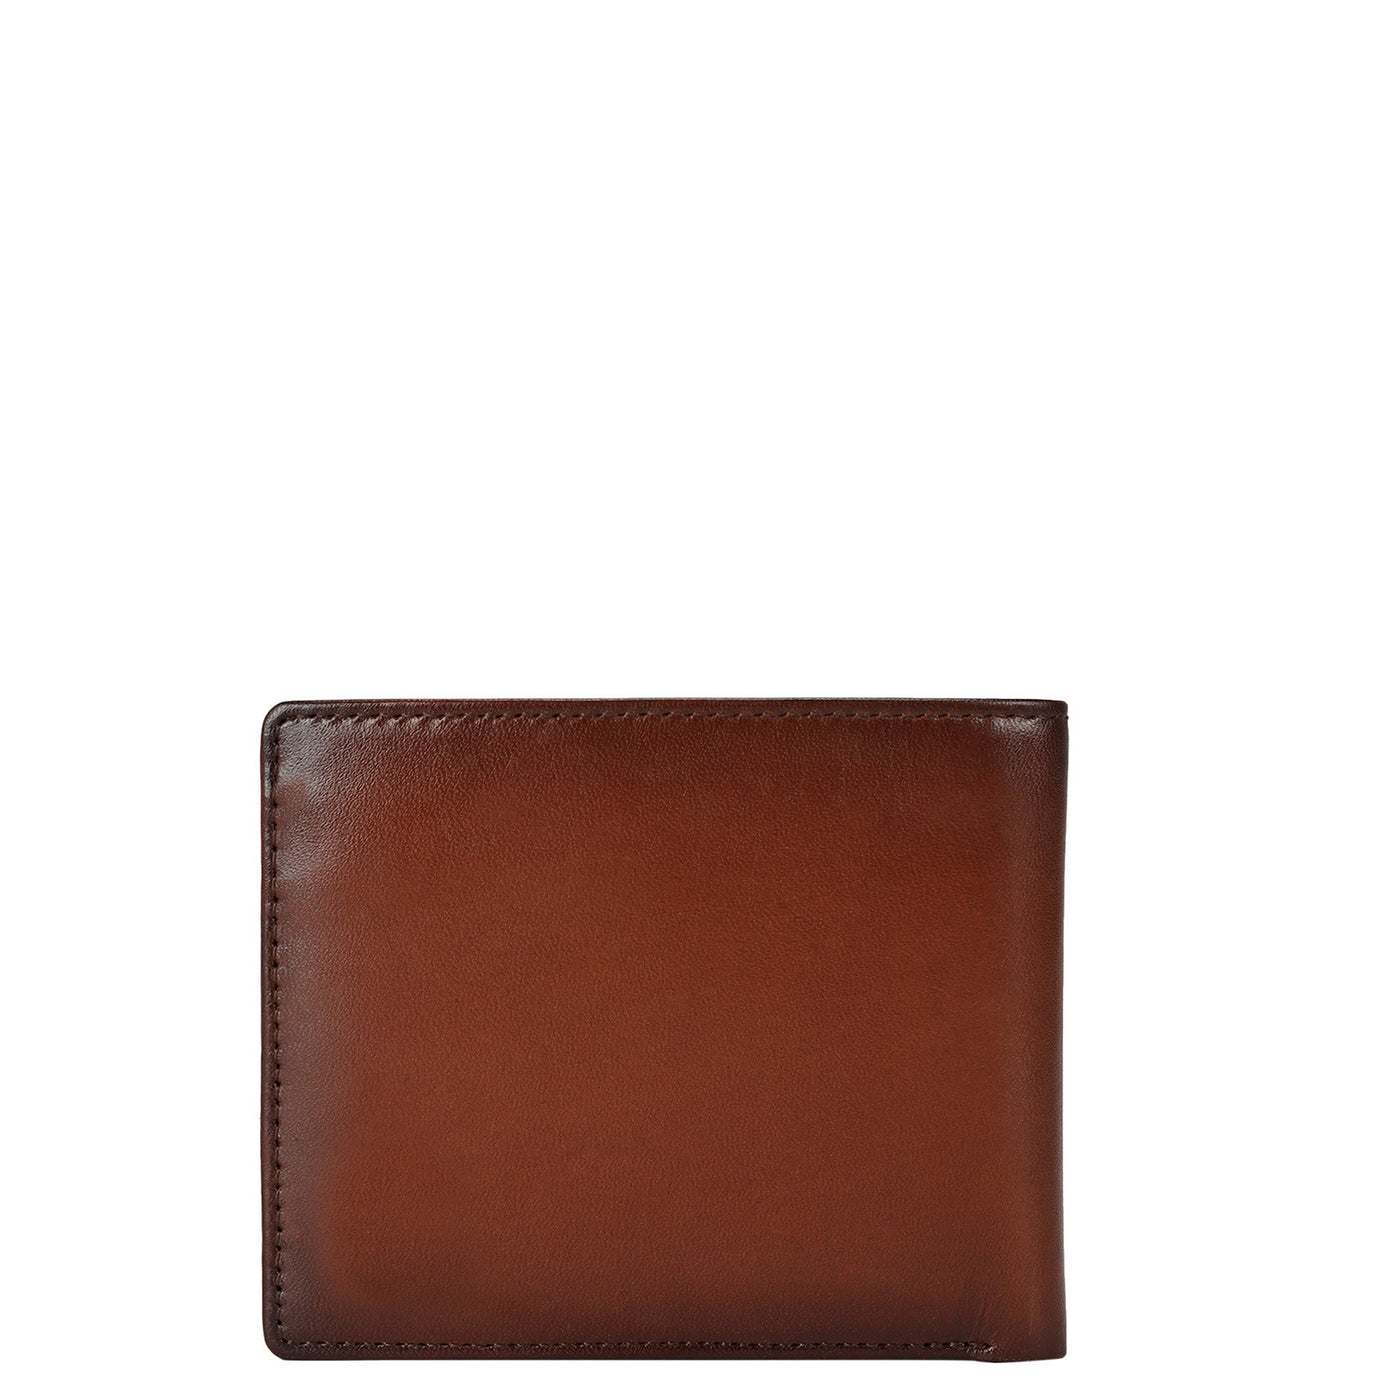 Brown Plain Leather Mens Wallet & Belt Gift Set